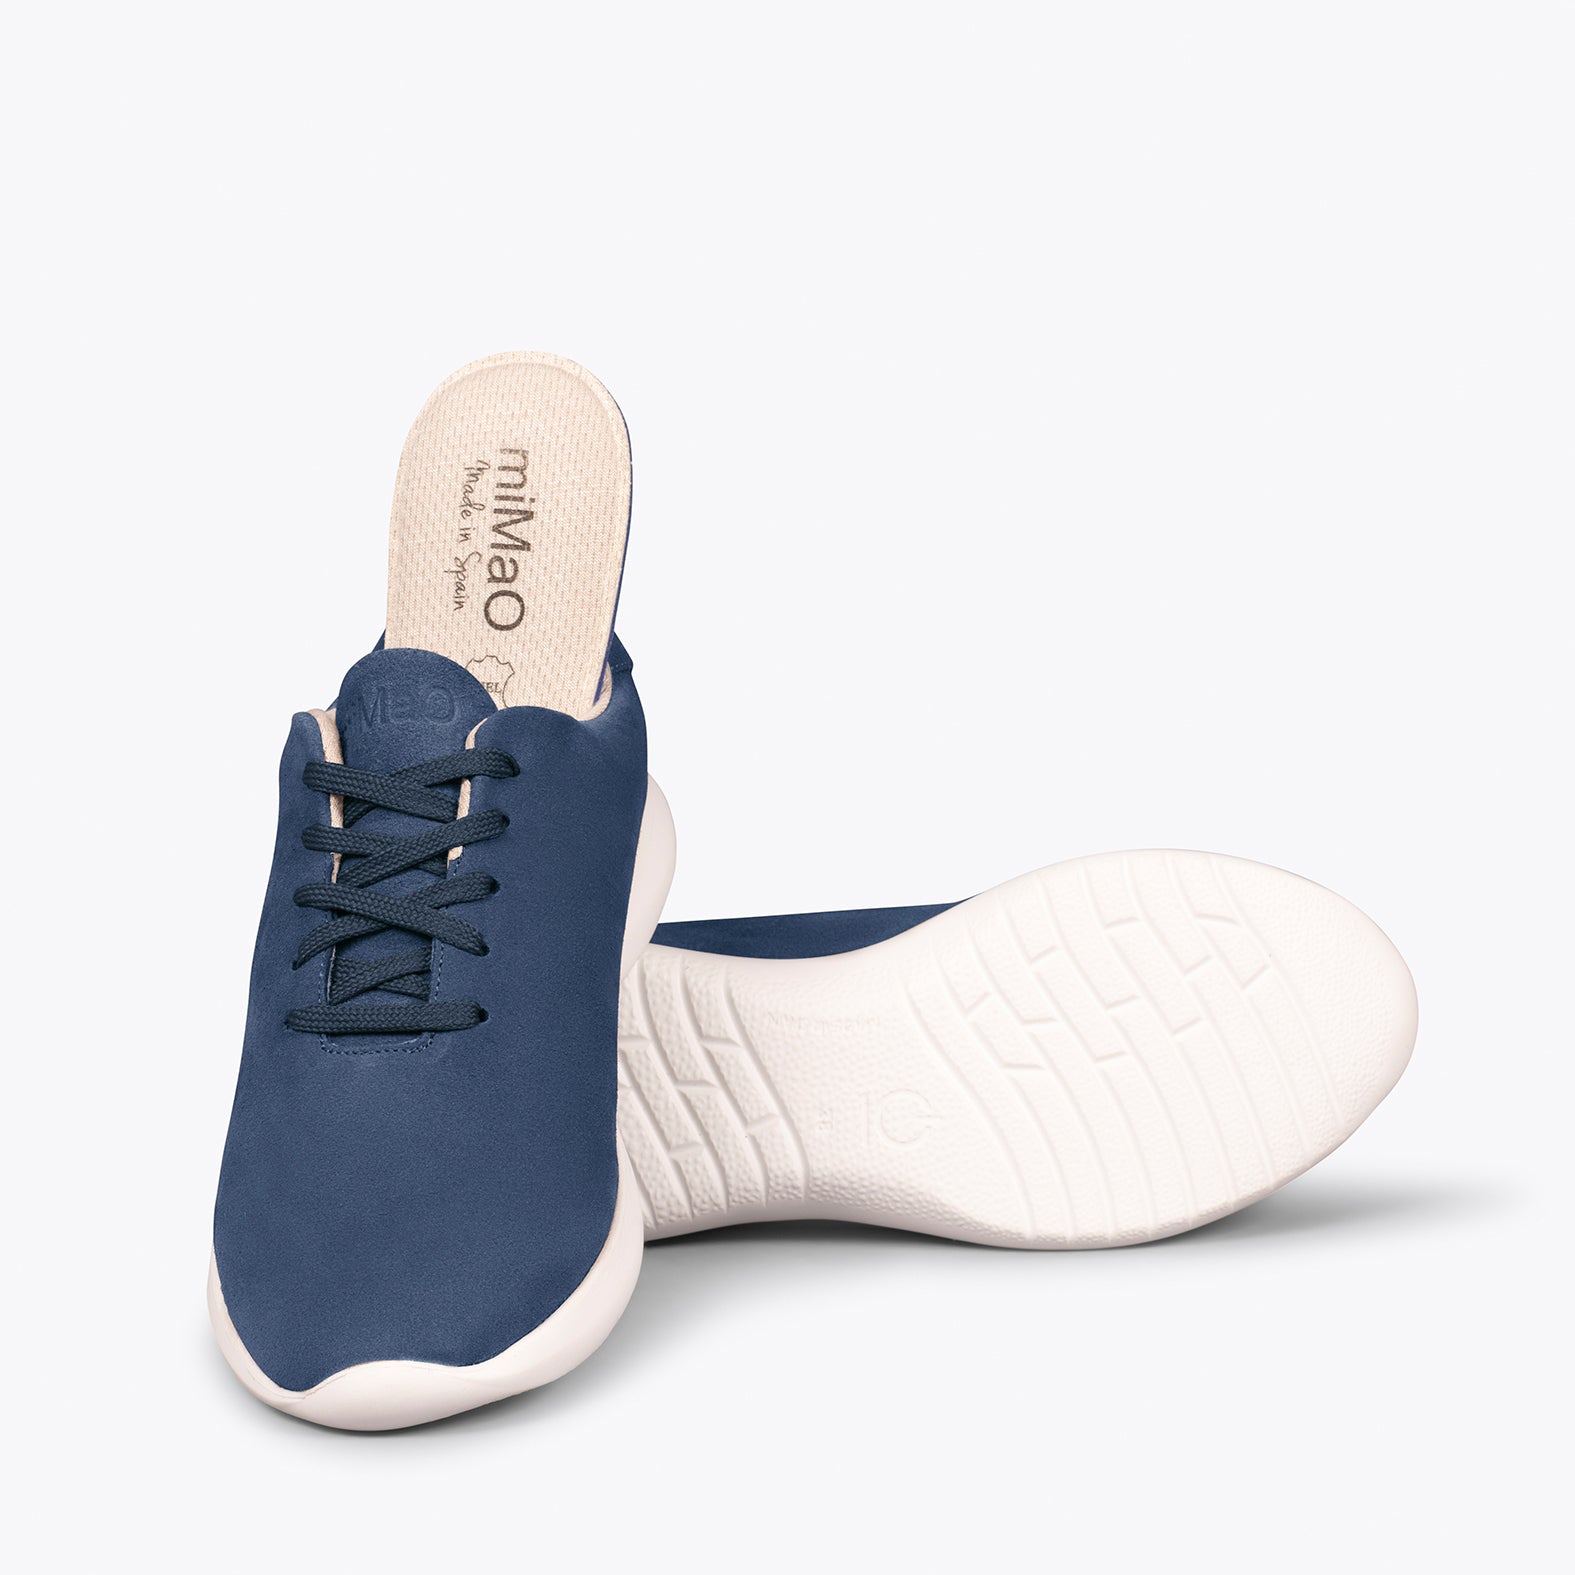 WALK – NAVY comfortable women’s sneakers